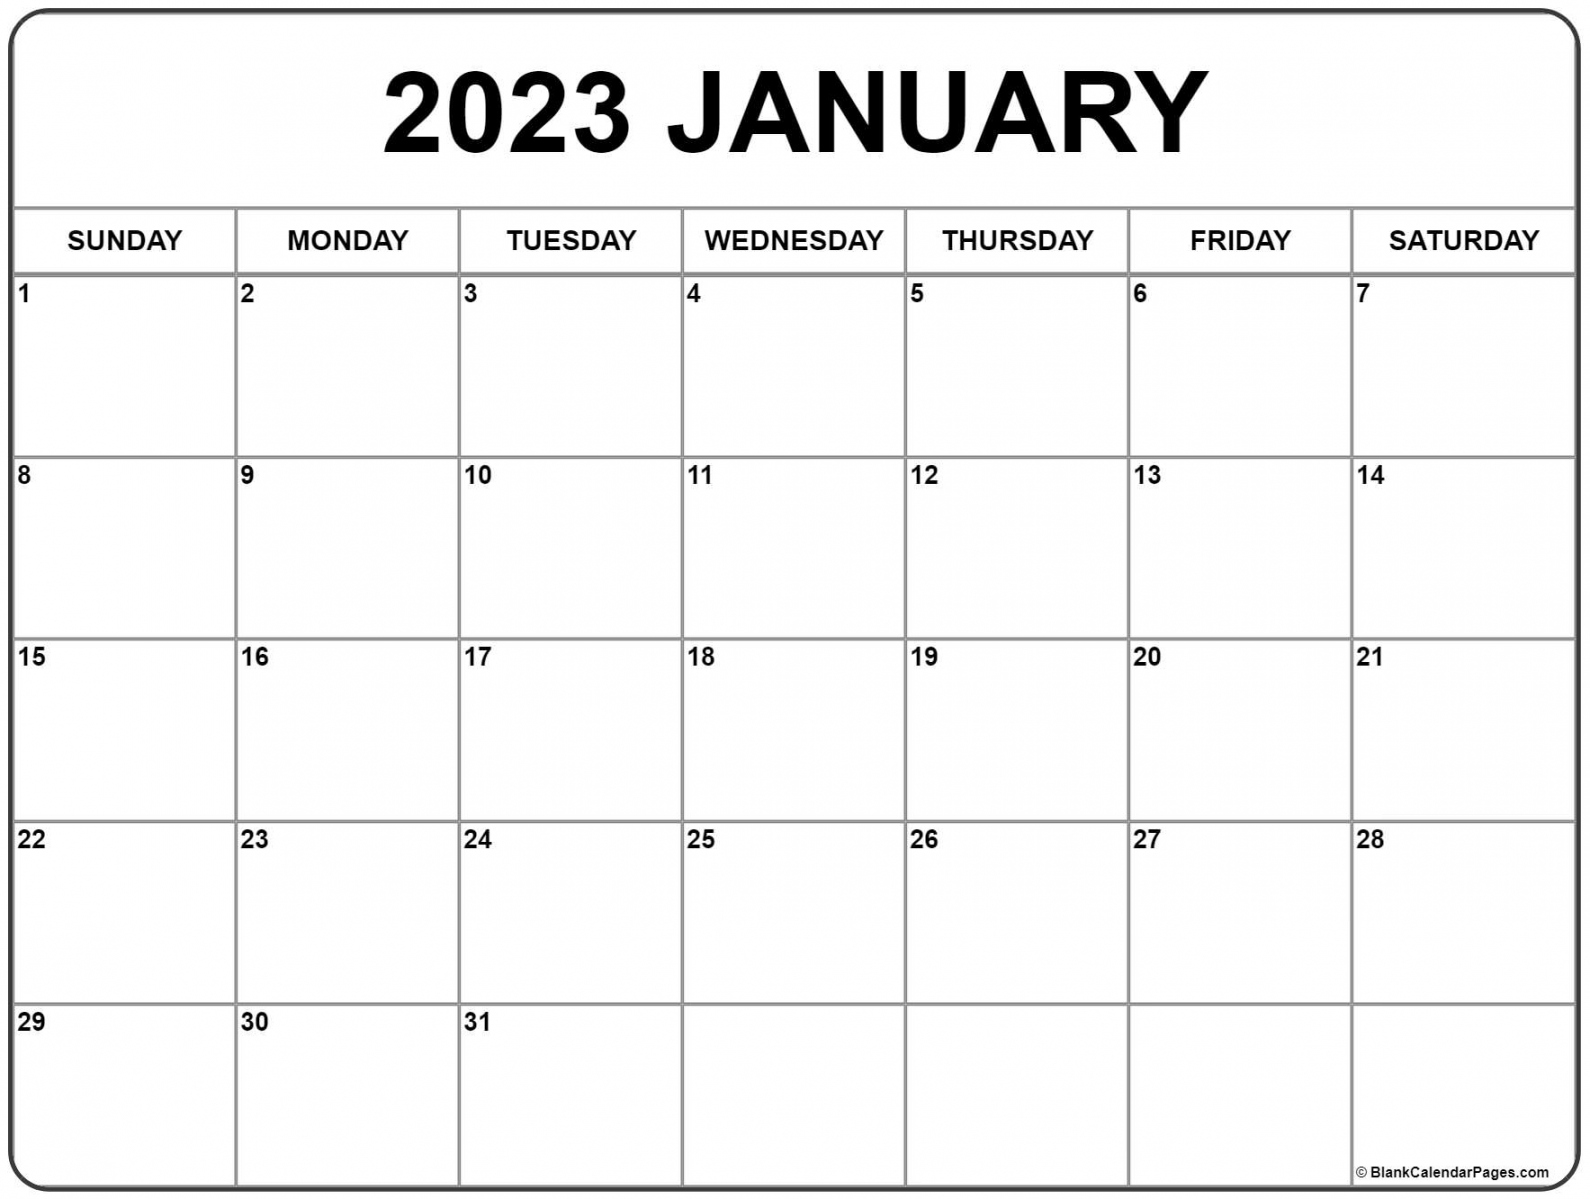 Free Printable 2023 Calendar - Printable - January  calendar  free printable calendar